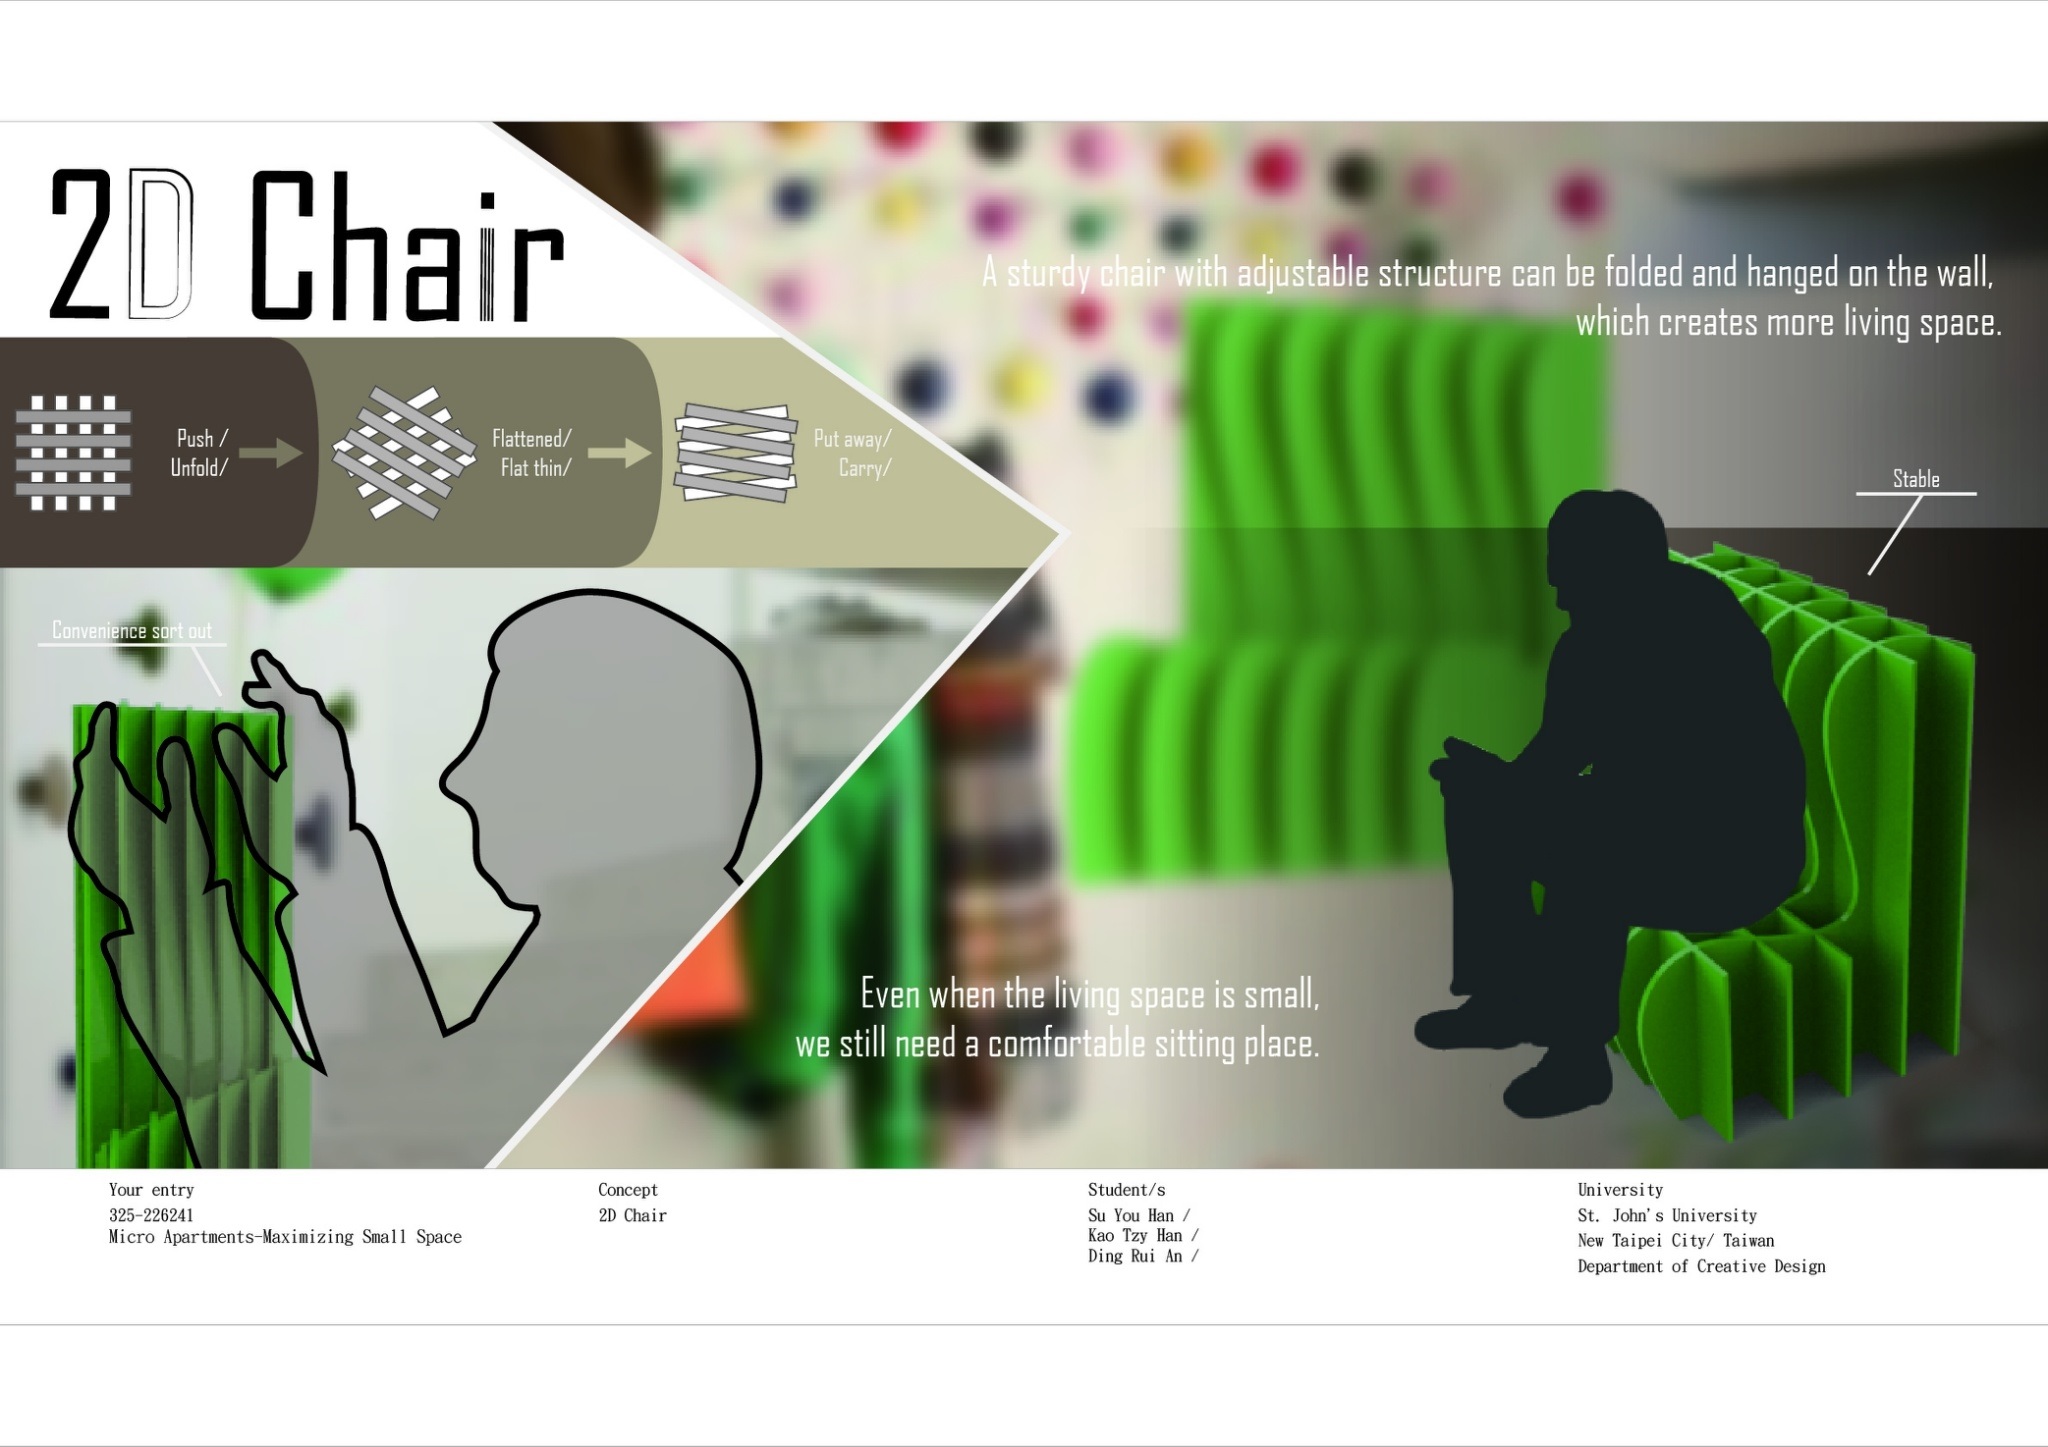 聖約翰科大創意設計系再次以三項作品入圍2017 iF設計新秀獎，圖為「2D Chair」作品之設計概念及成果展示